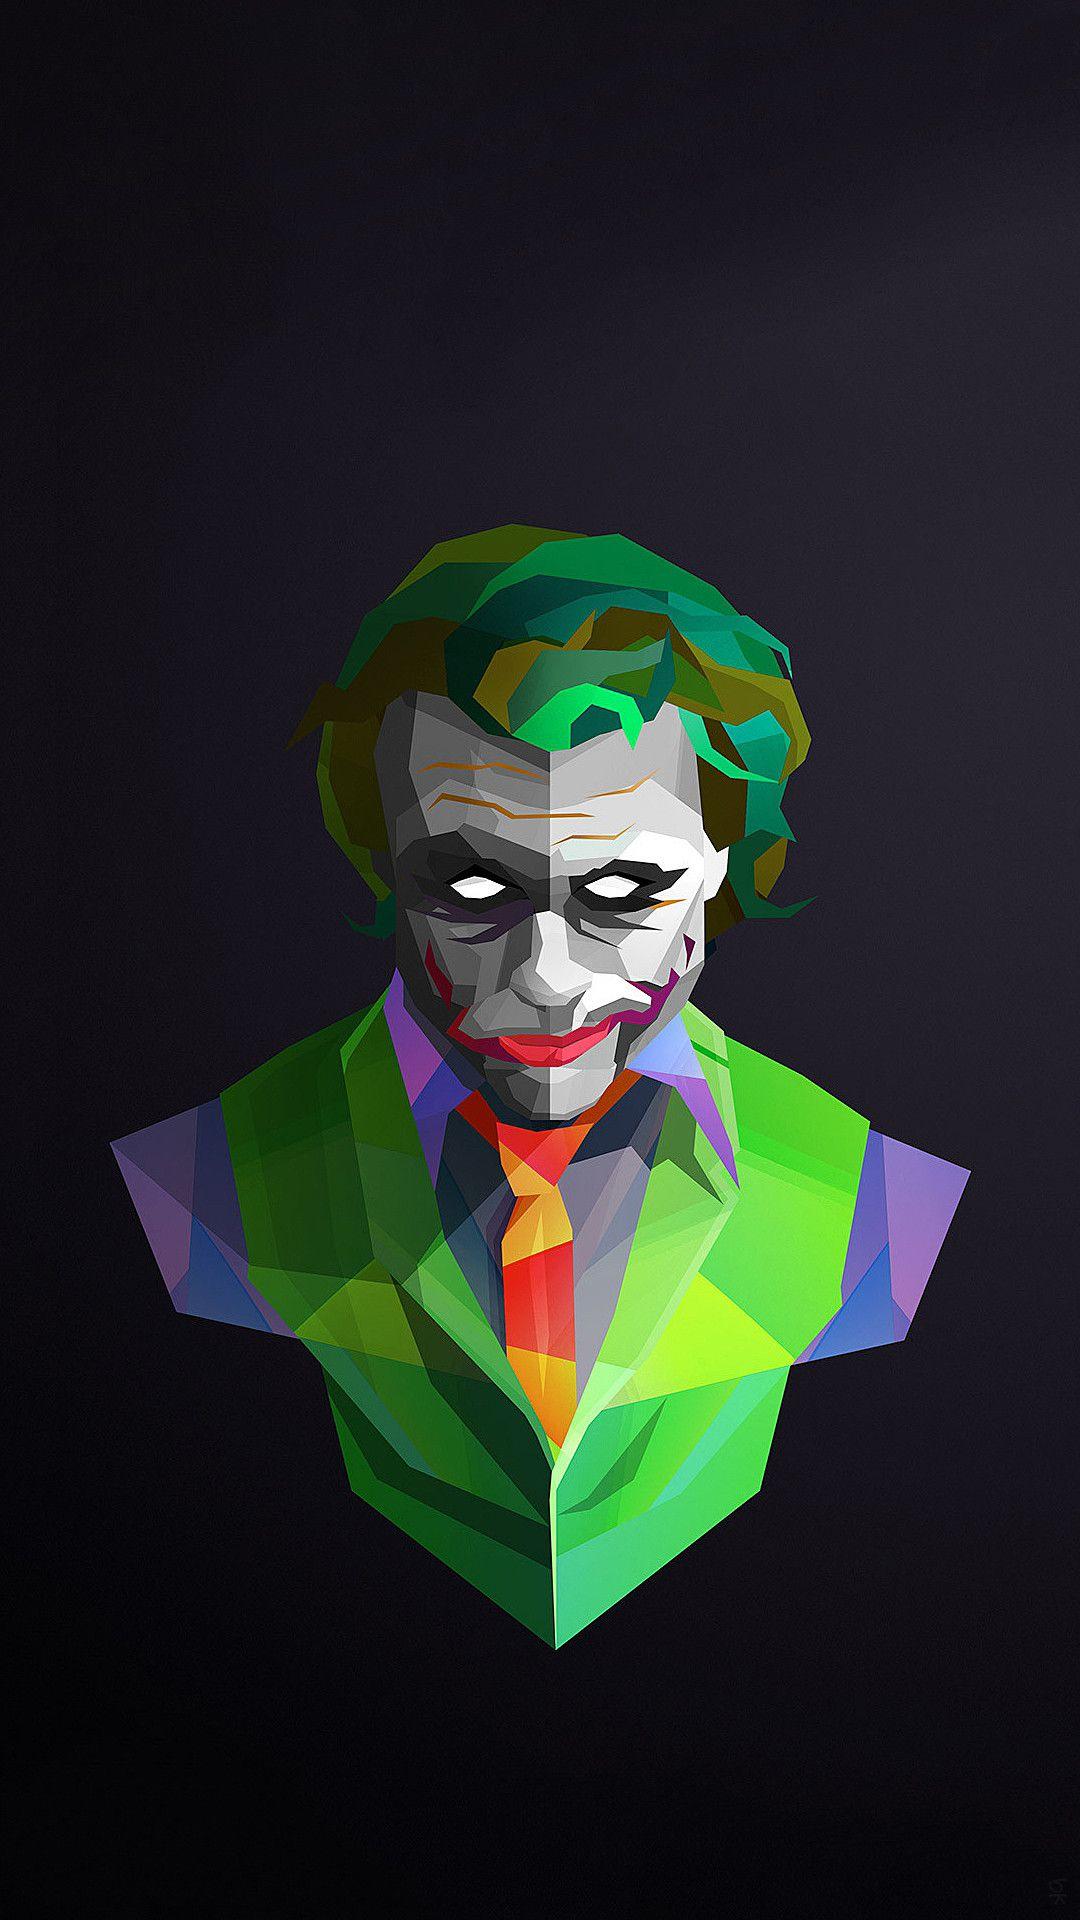 19 Joker Live Wallpapers, Animated Wallpapers - MoeWalls